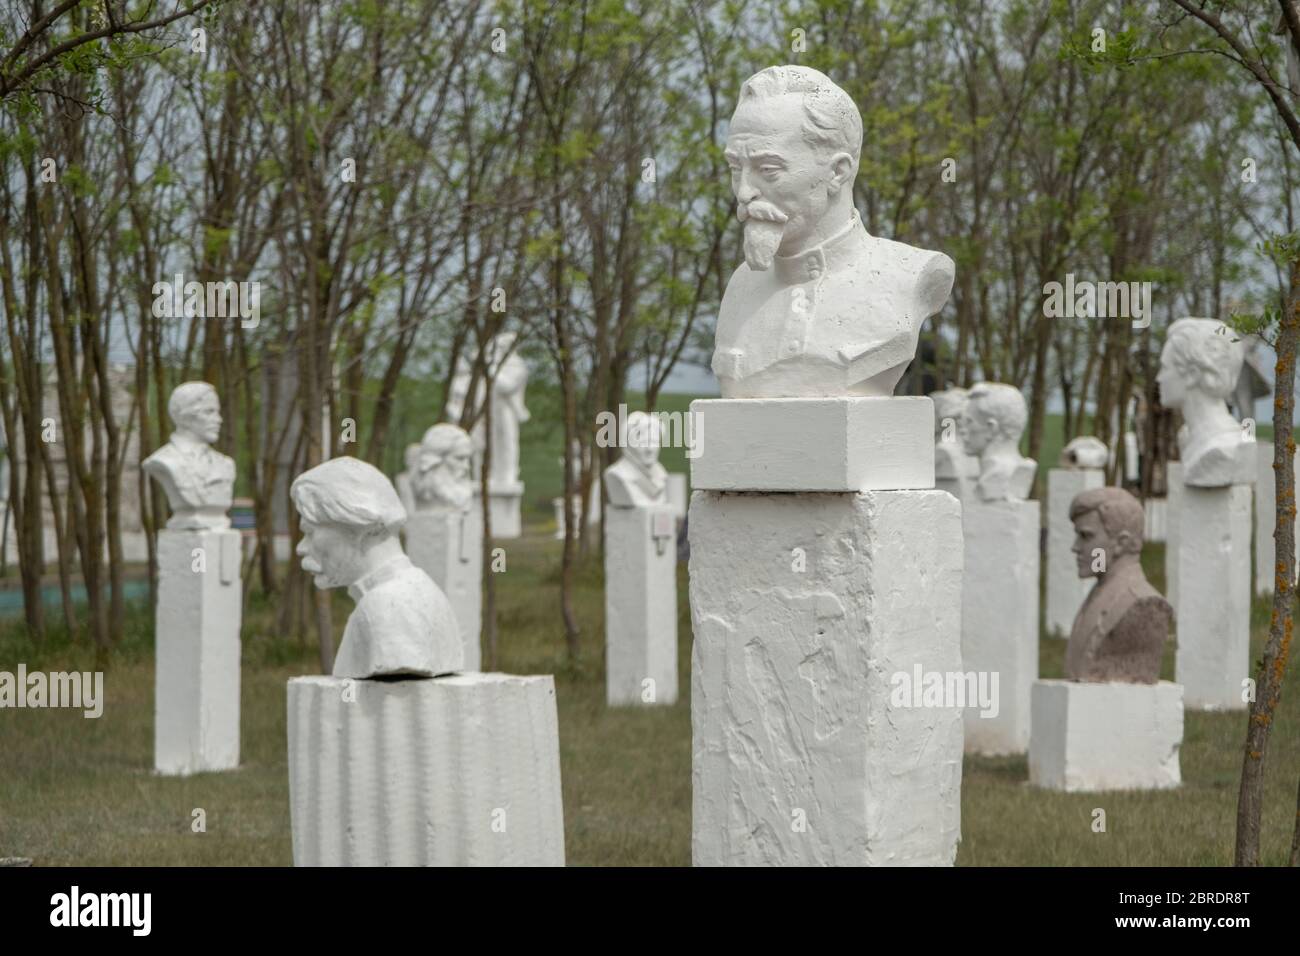 Buste de Felix Dzerzhinsky sur fond est groupe de sculptural de bustes autres leaders dans le Musée du réalisme socialiste. Frumushika Nova, Oblast d'Odessa, Ukraine, Europe de l'est Banque D'Images